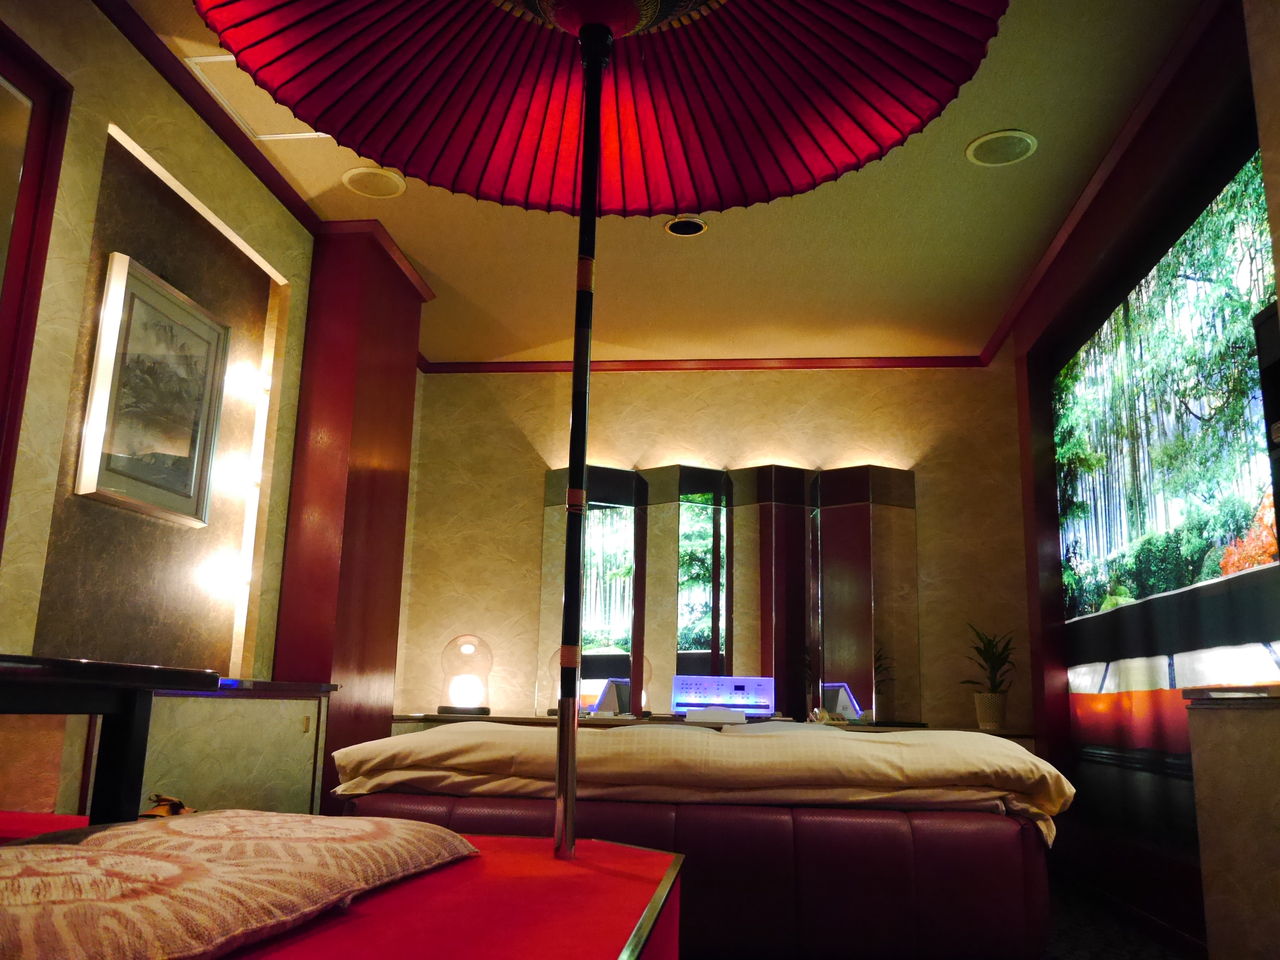 京都ラブホ 和傘のあるホテルマイアミが昭和過ぎてすごかった マルタナビ 社会人からのマルタ留学ブログ